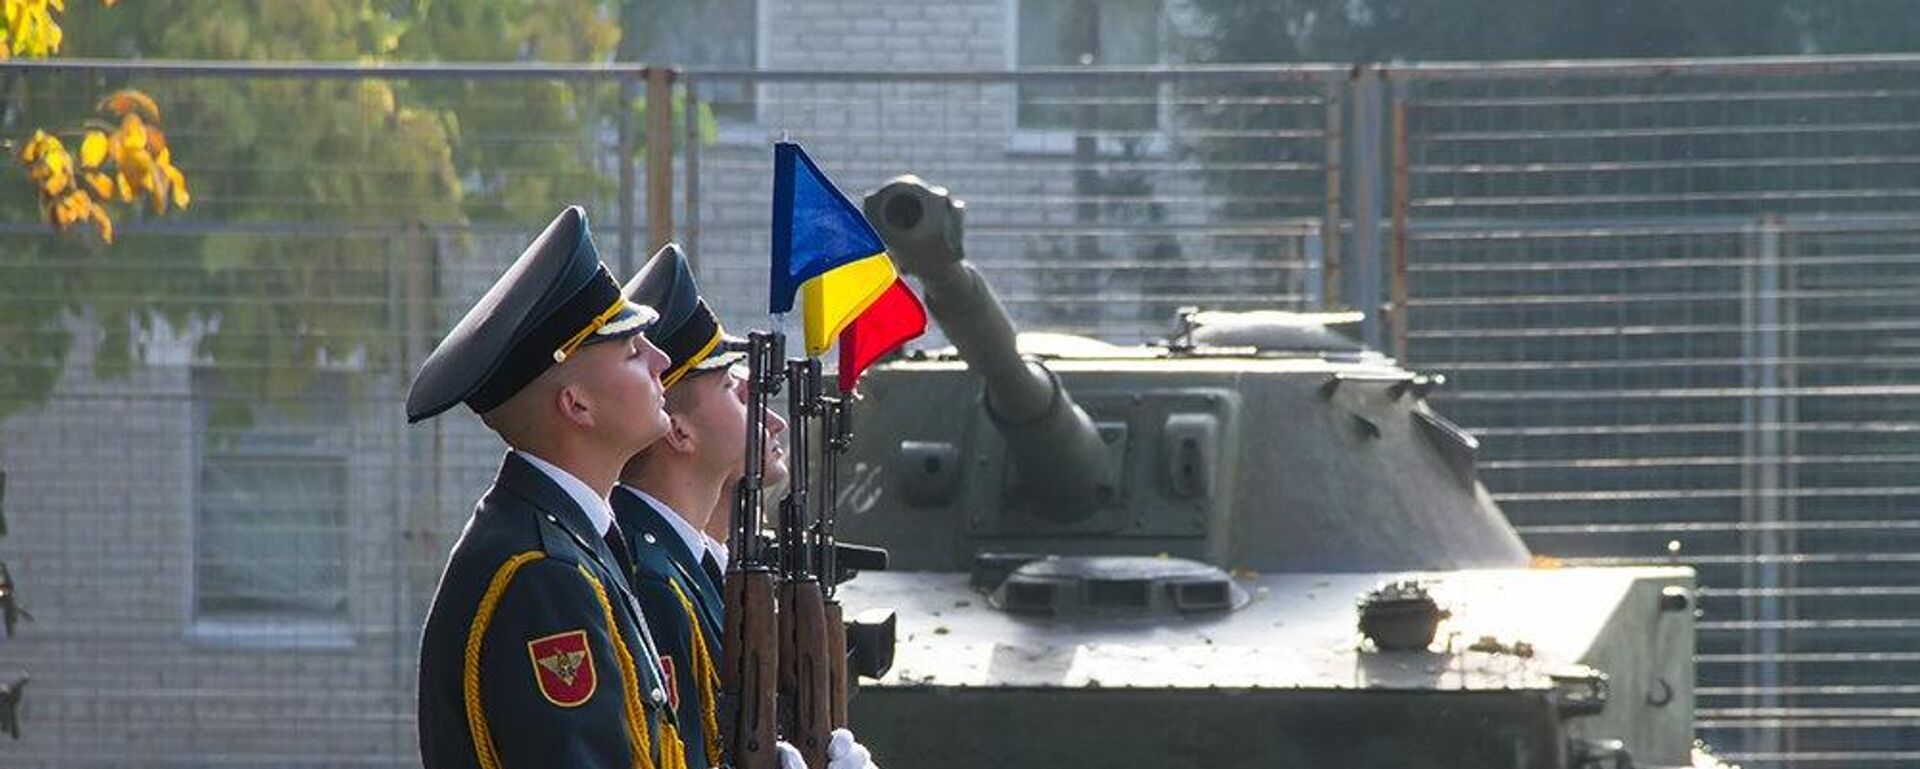 Политолог: вооружаясь, мы понижаем уровень безопасности Молдовы - Sputnik Молдова, 1920, 07.07.2022